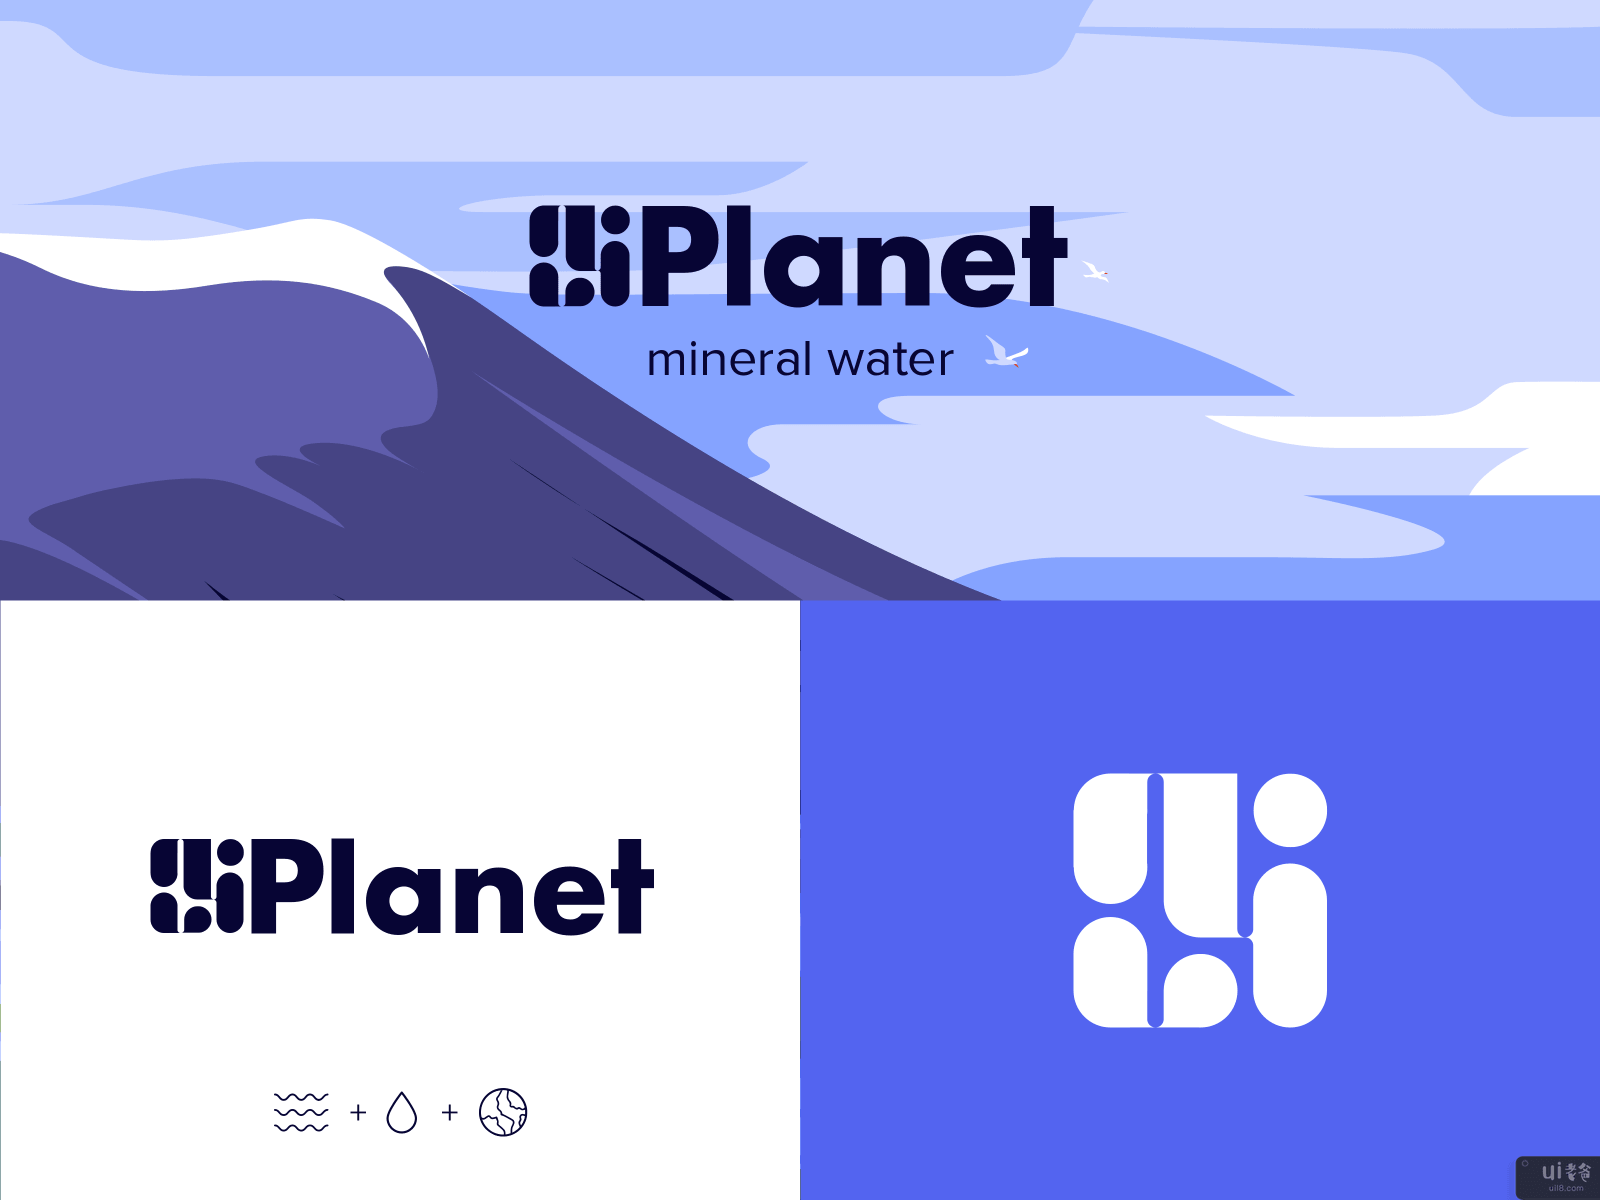 星球 - 矿泉水的品牌建设(Planet - Branding for Mineral Water)插图1